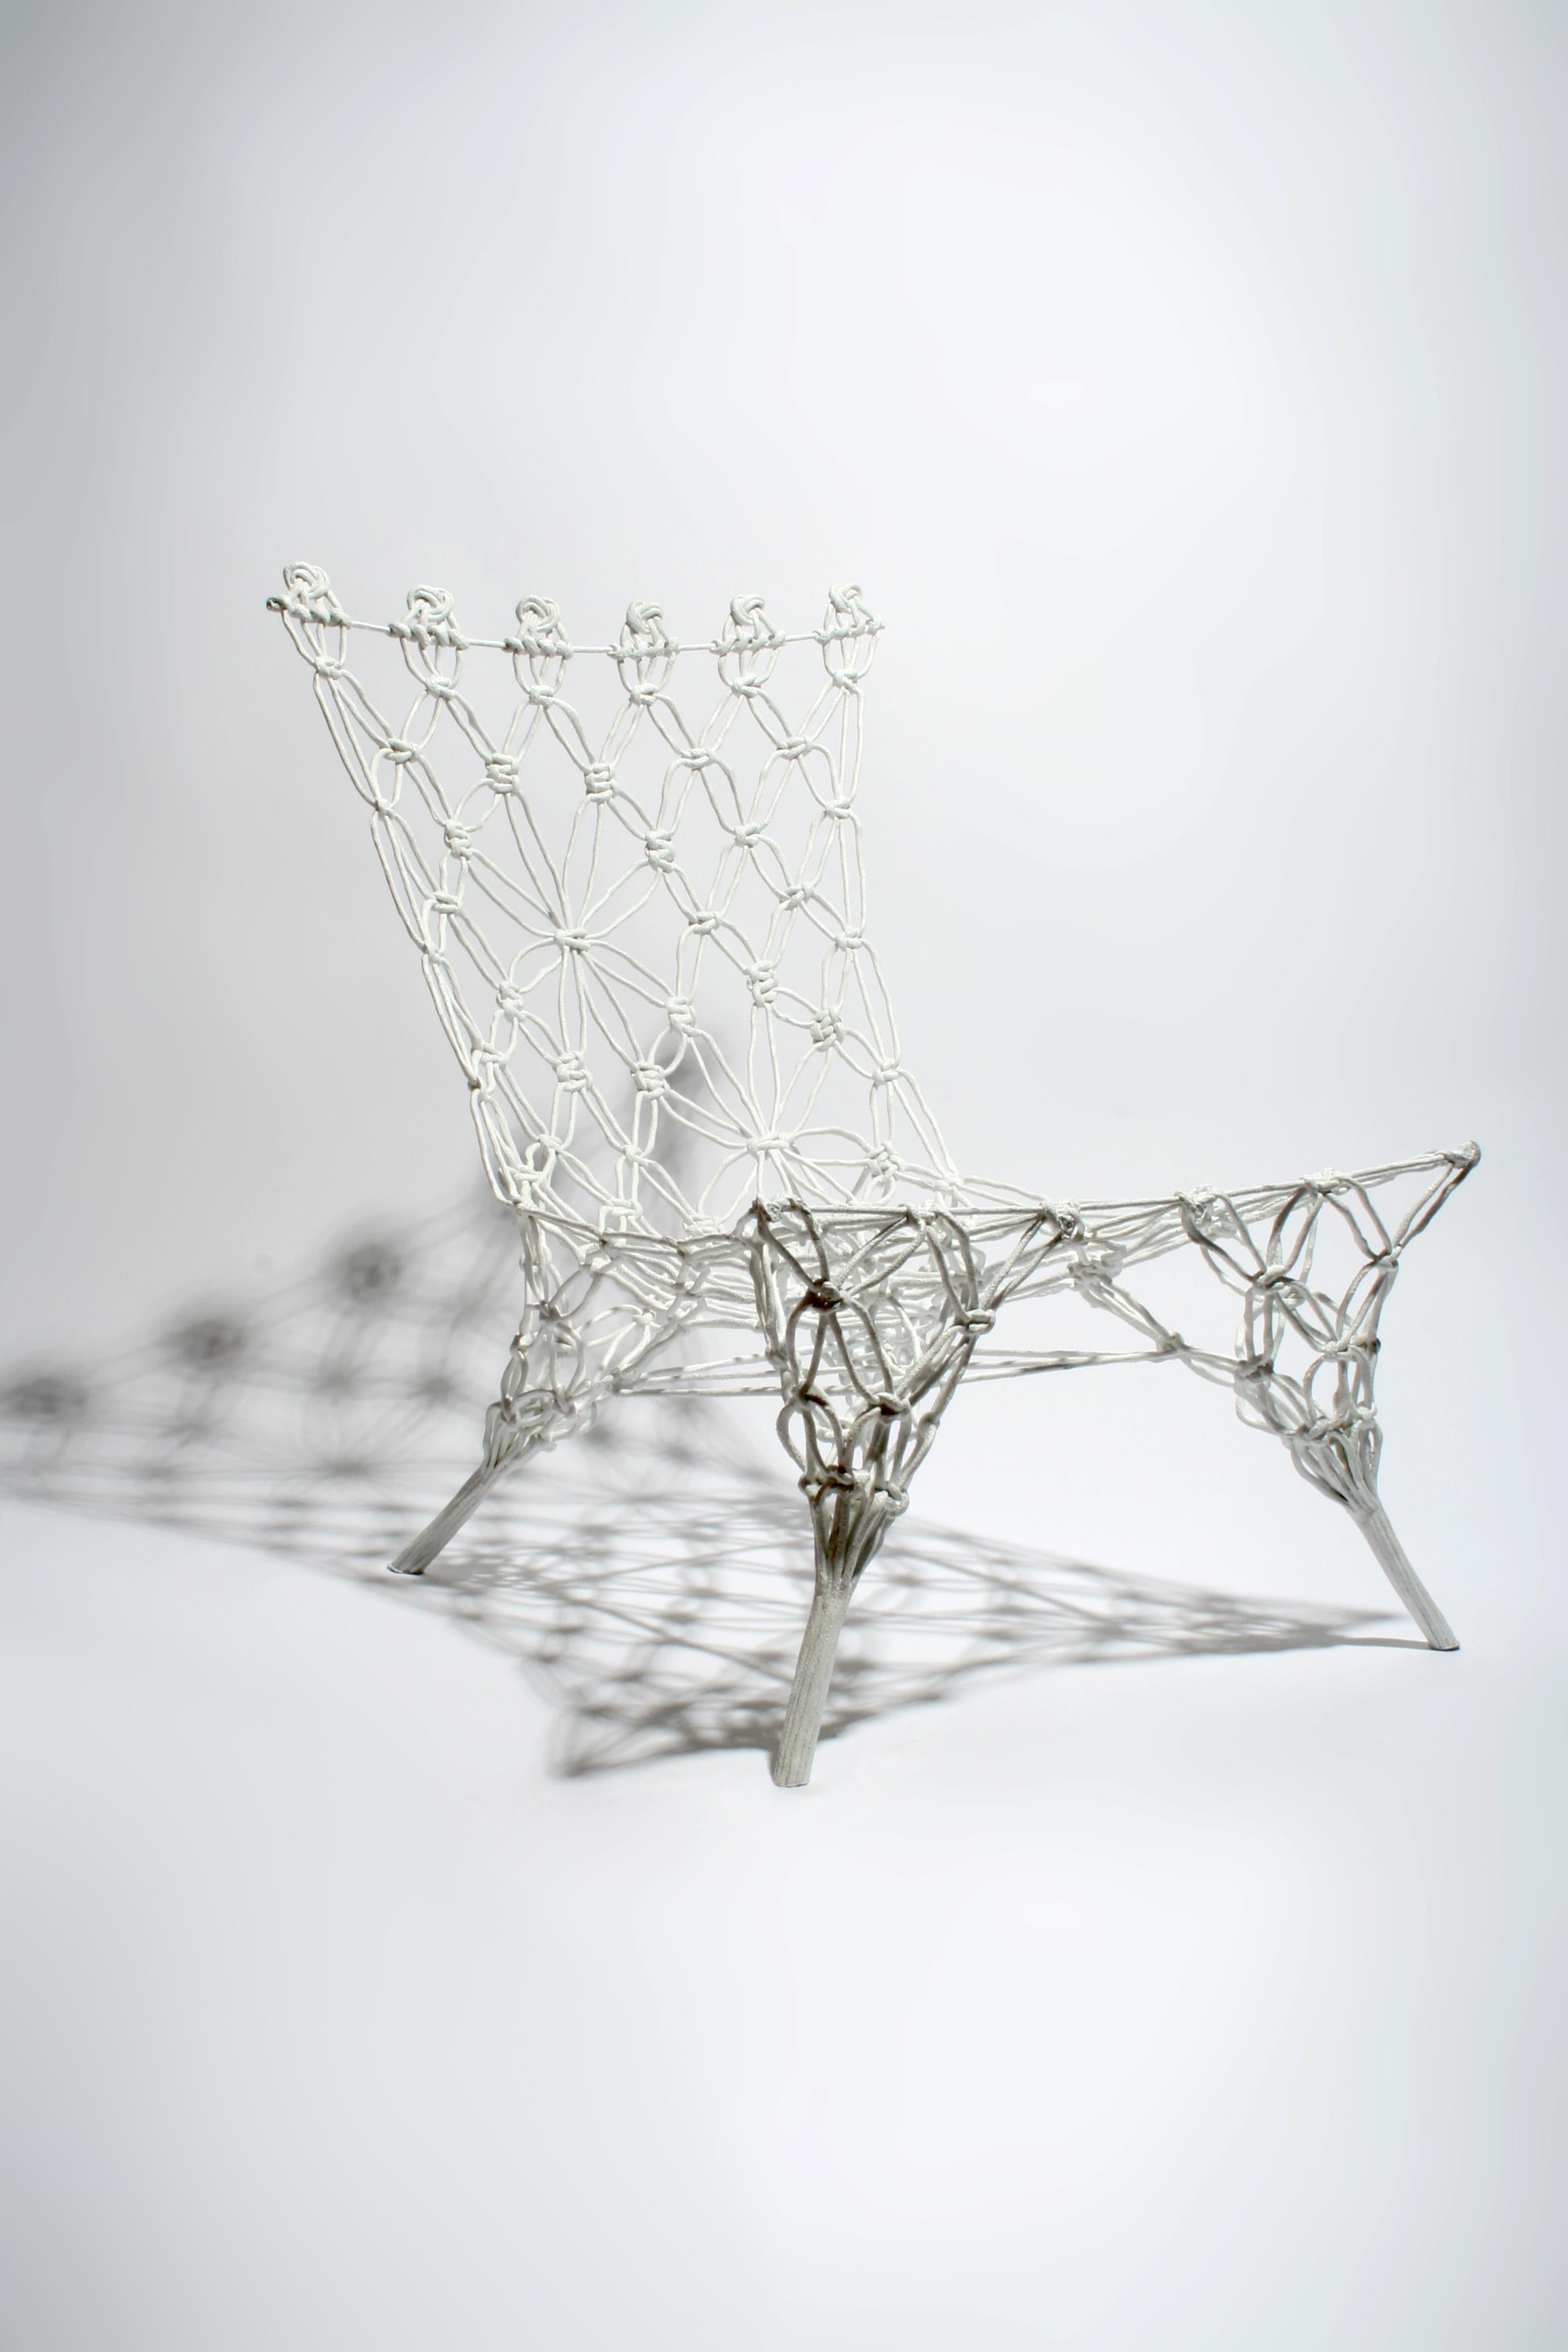 Knüpfstuhl - Weiß ist ein handgeknüpfter Prototyp eines Stuhls, Designjahr 2007, Einzelstück

Der 